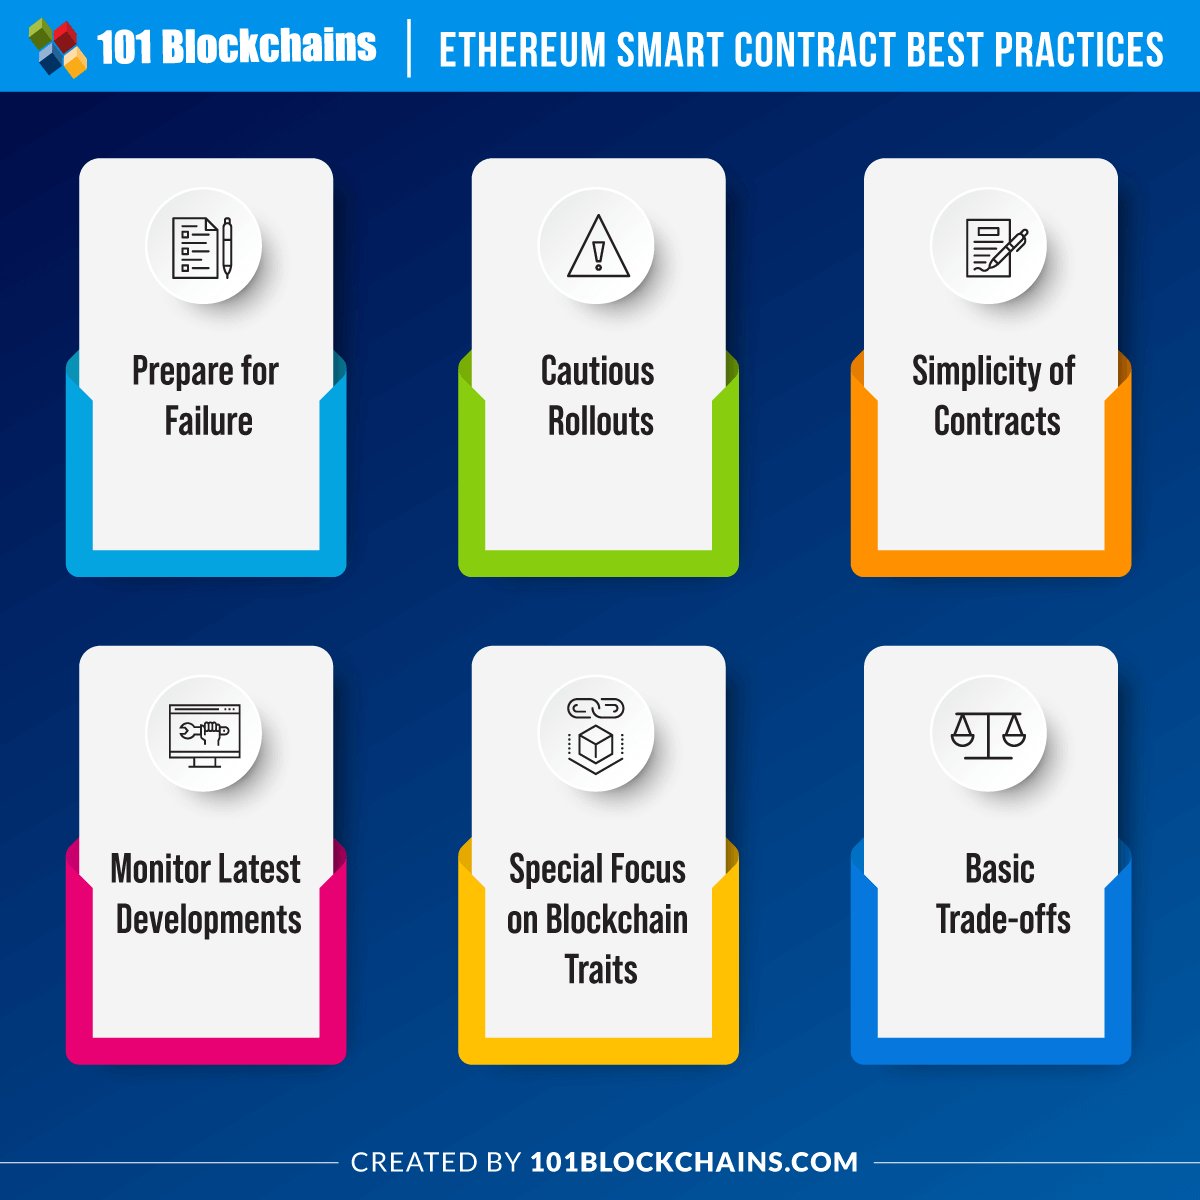 Ethereum smart contract best practices